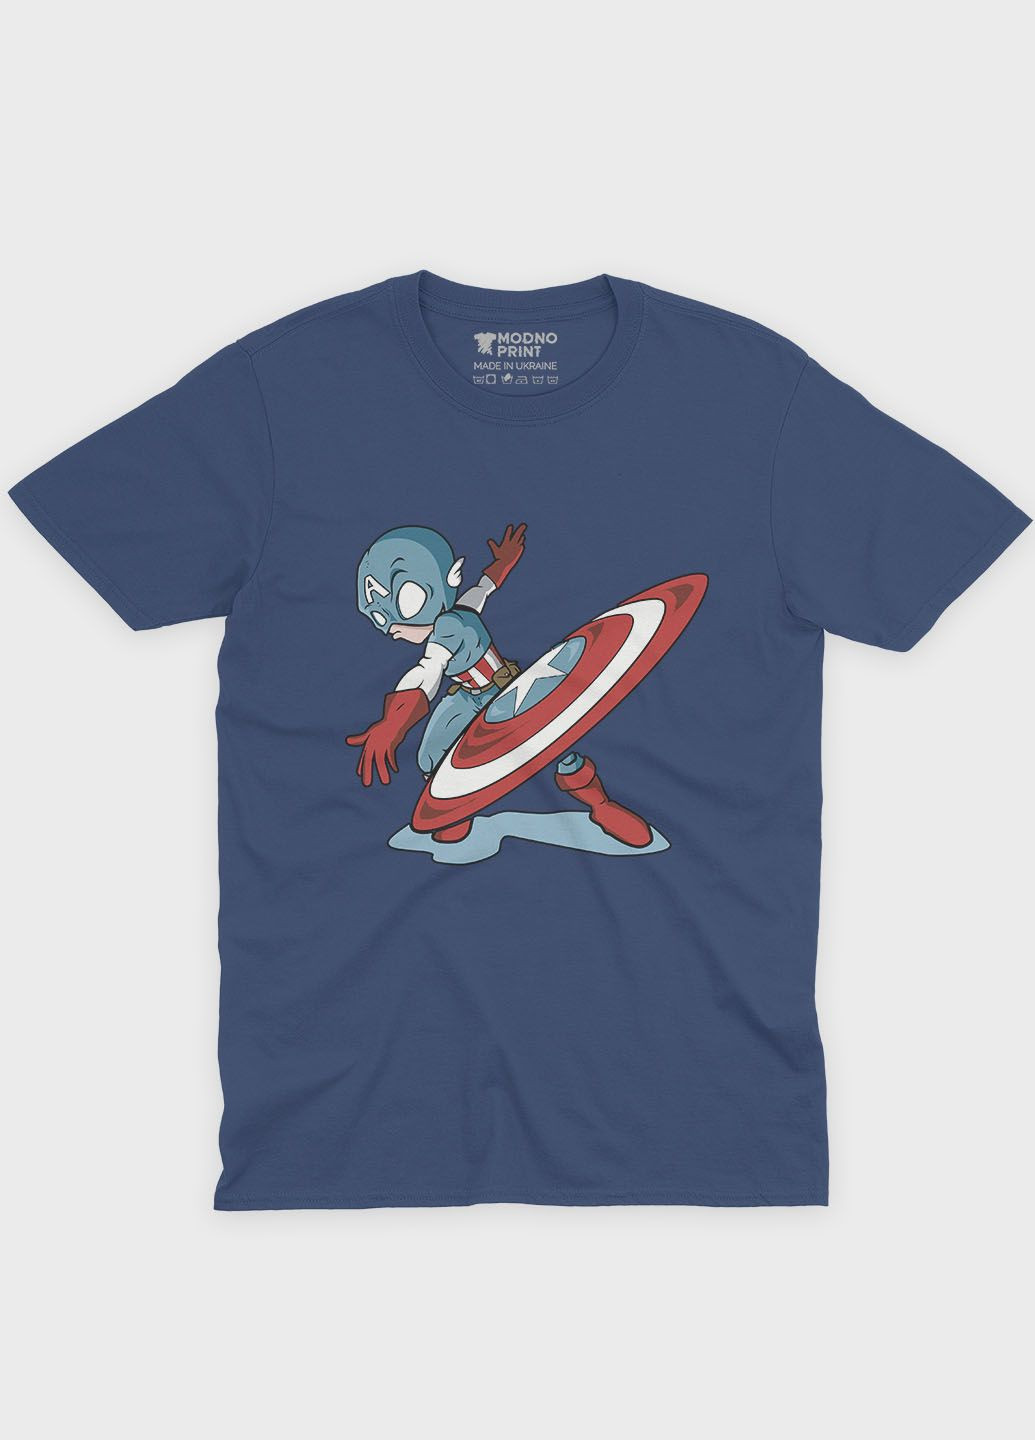 Темно-синя демісезонна футболка для хлопчика з принтом супергероя - капітан америка (ts001-1-nav-006-022-011-b) Modno